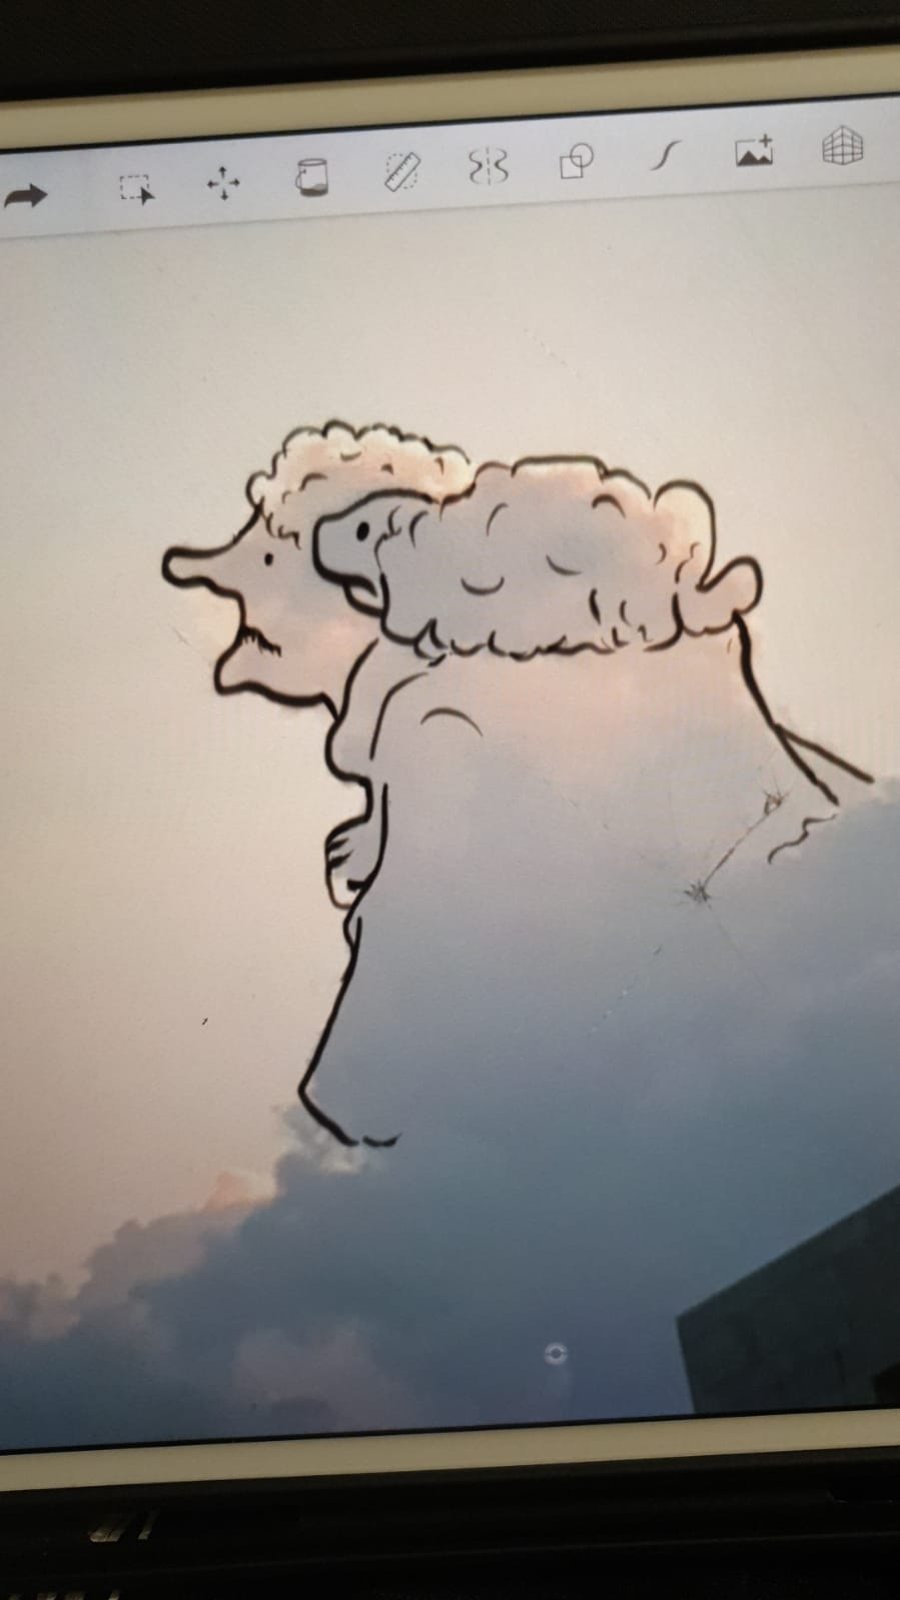 הציור של אוריאל פלד שהפך ל"אתגר הענן"